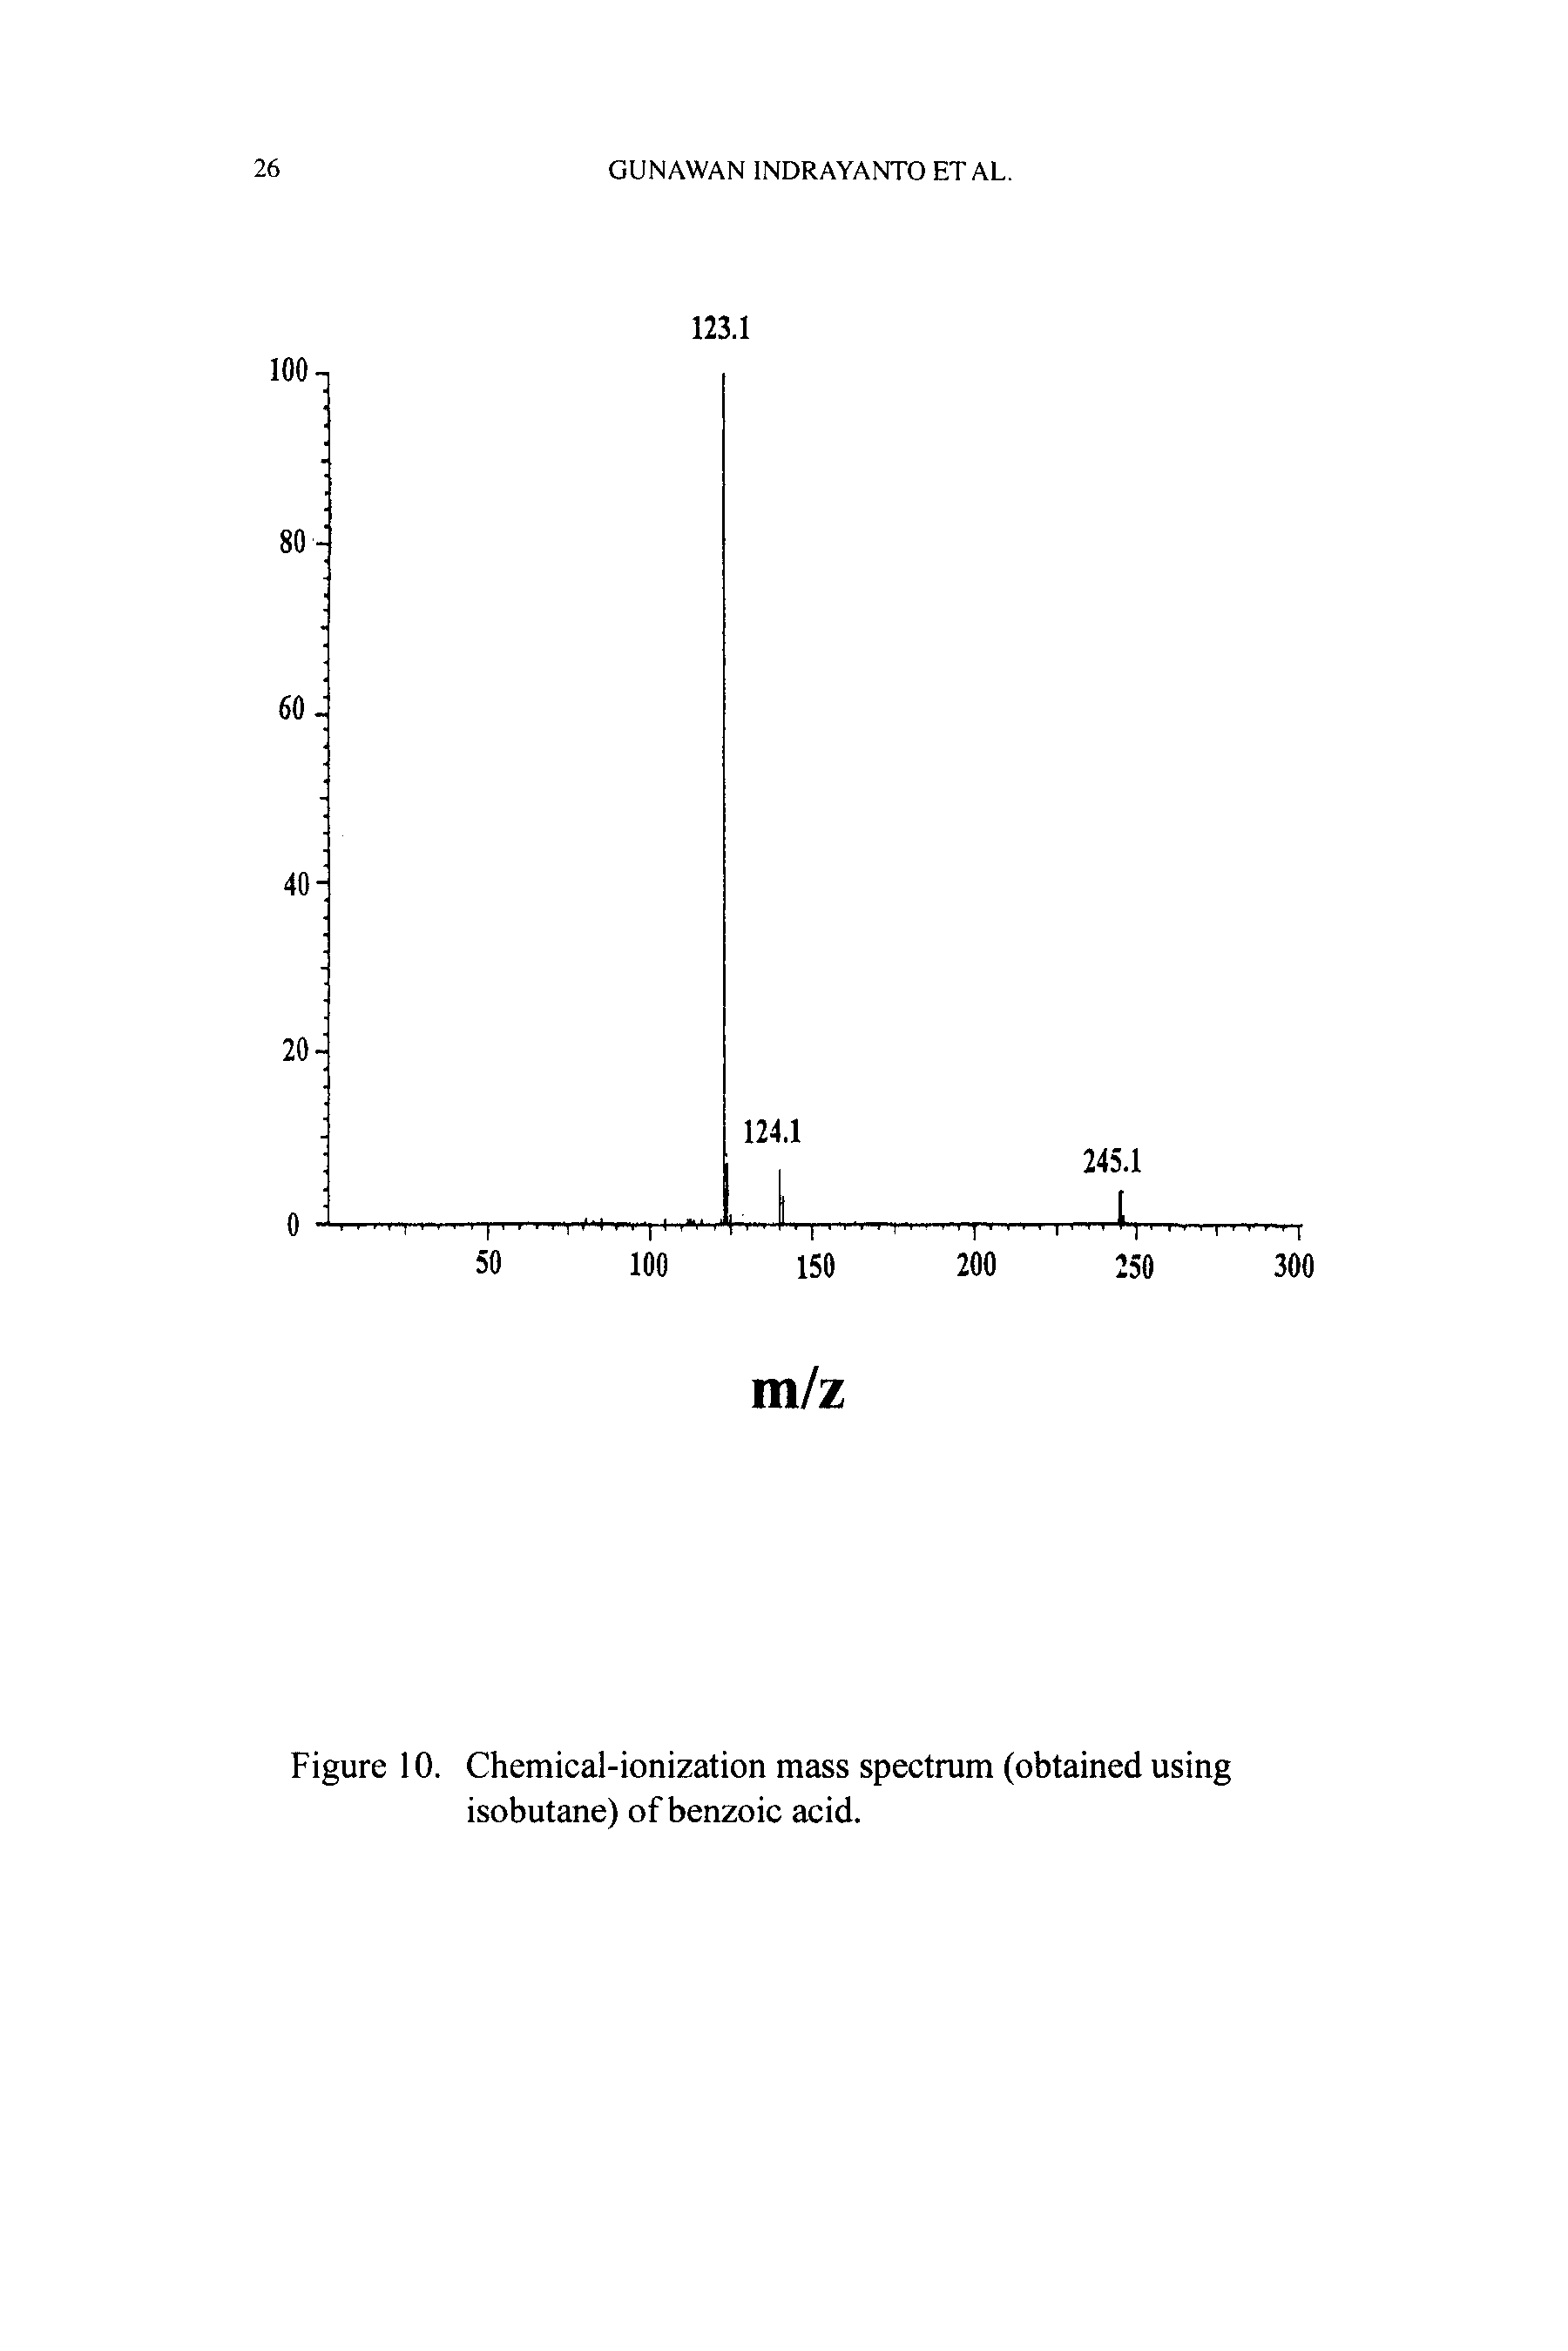 Figure 10. Chemical-ionization mass spectrum (obtained using isobutane) of benzoic acid.